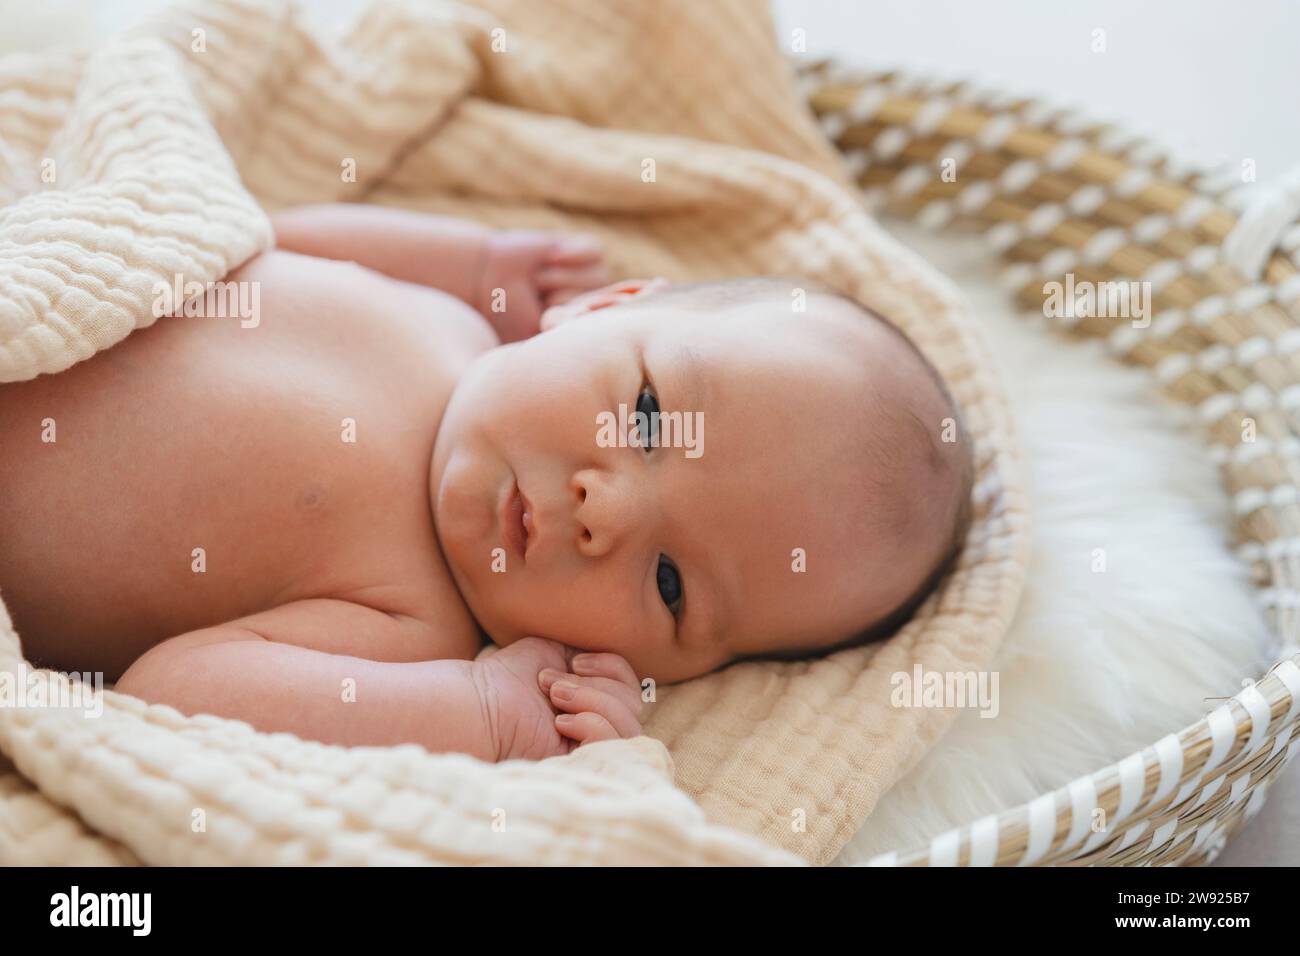 Bebé Recién Nacido Niña Posando En La Cesta Fotos, retratos, imágenes y  fotografía de archivo libres de derecho. Image 42174113